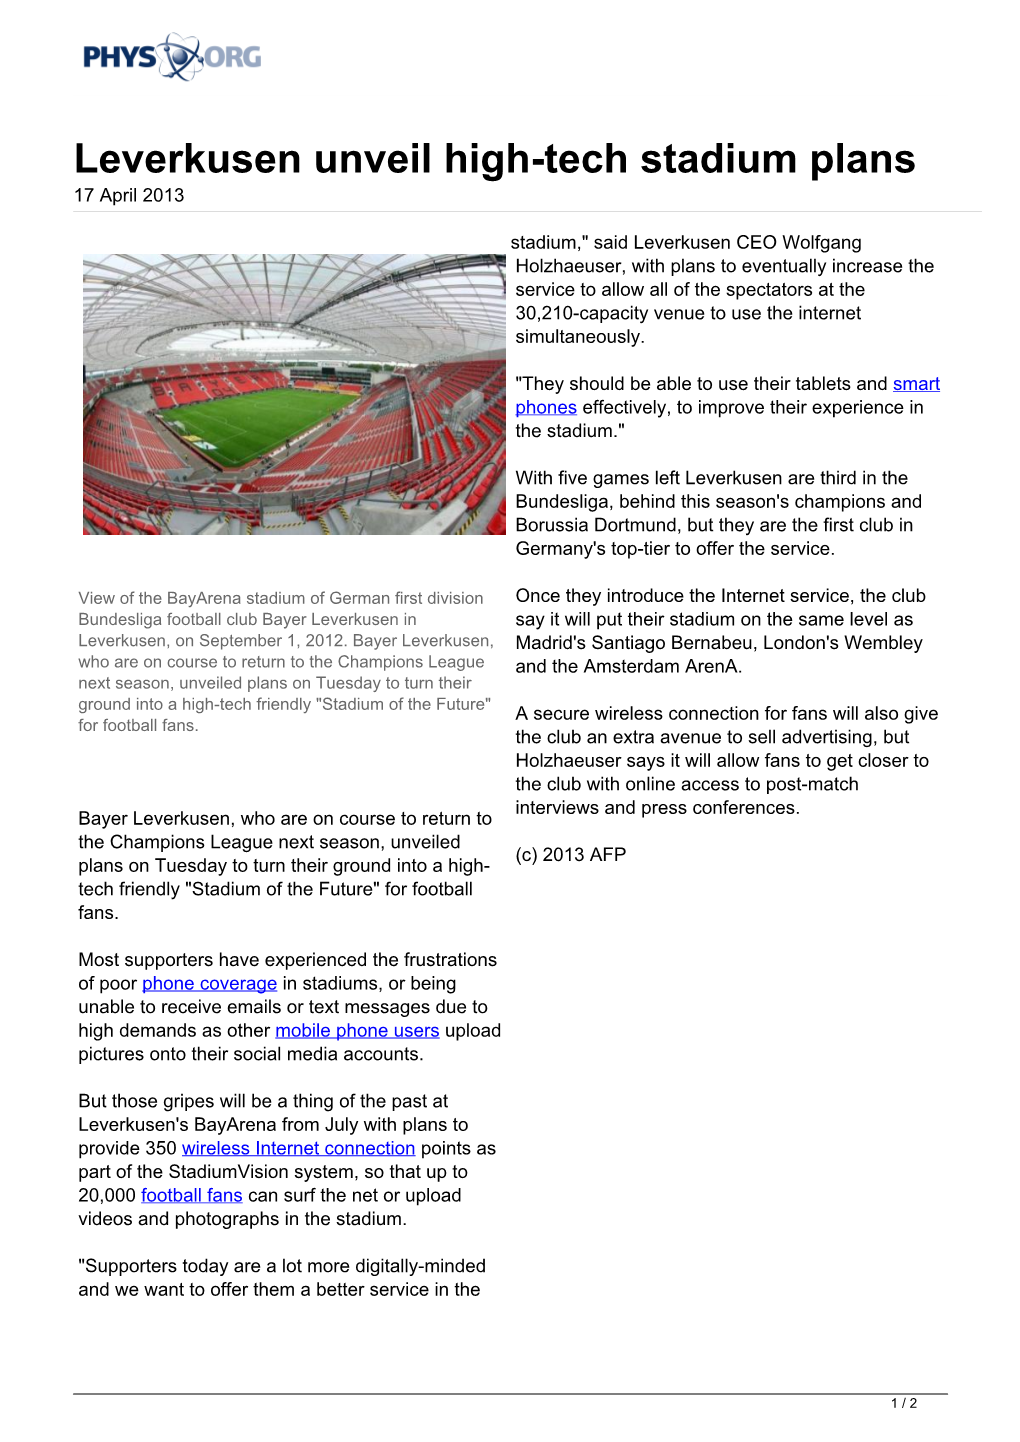 Leverkusen Unveil High-Tech Stadium Plans 17 April 2013